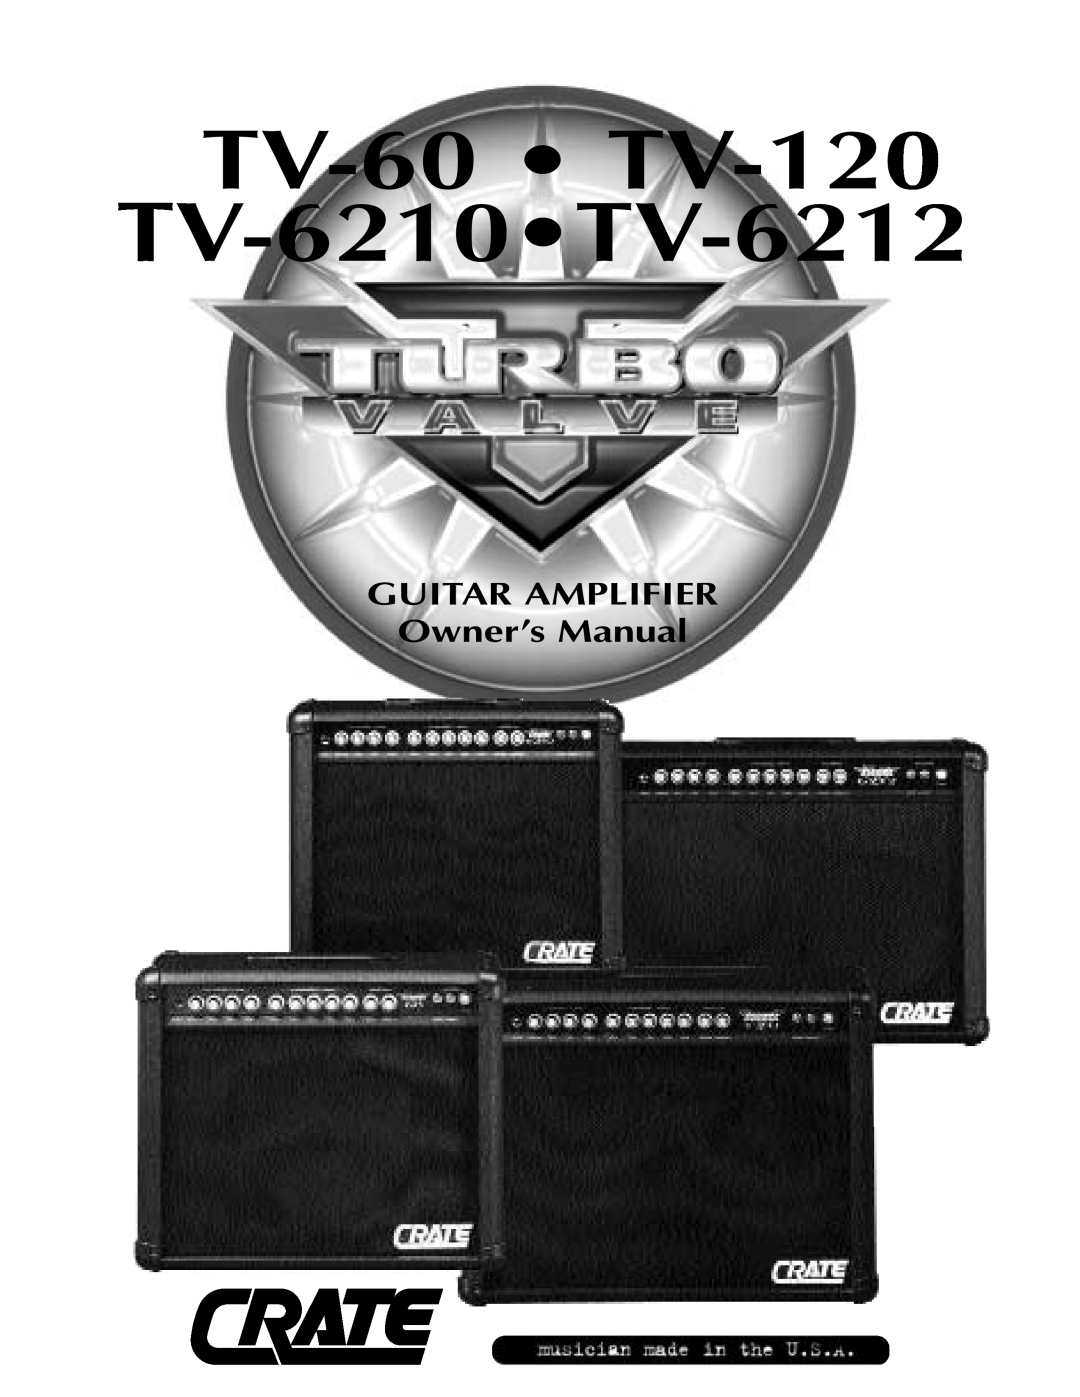 Crate Amplifiers owner manual TV-60 TV-120 TV-6210TV-6212, GUITAR AMPLIFIER Owner’s Manual 